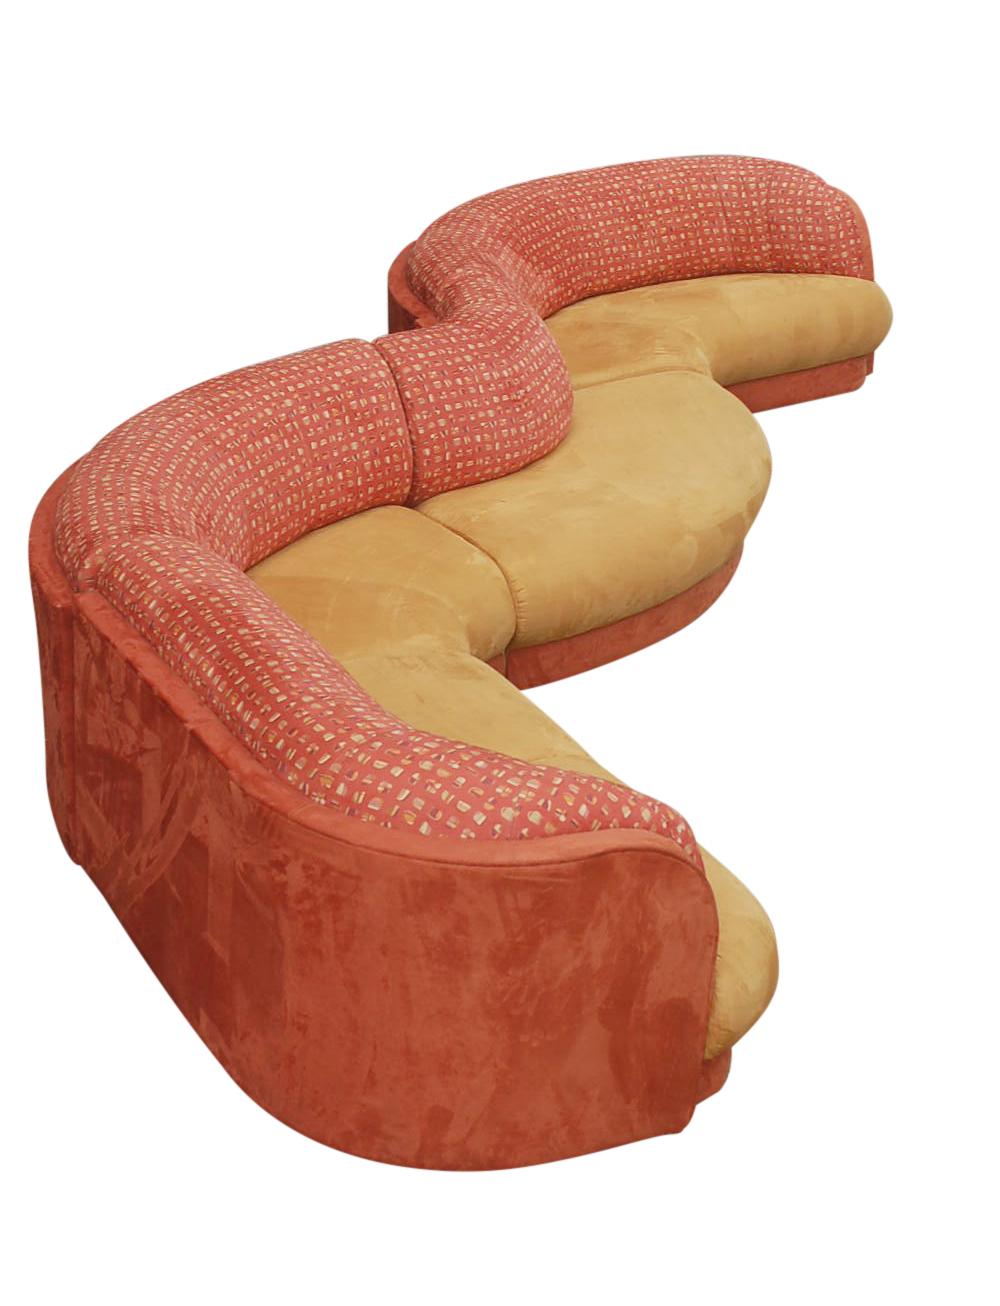 serpentine couch